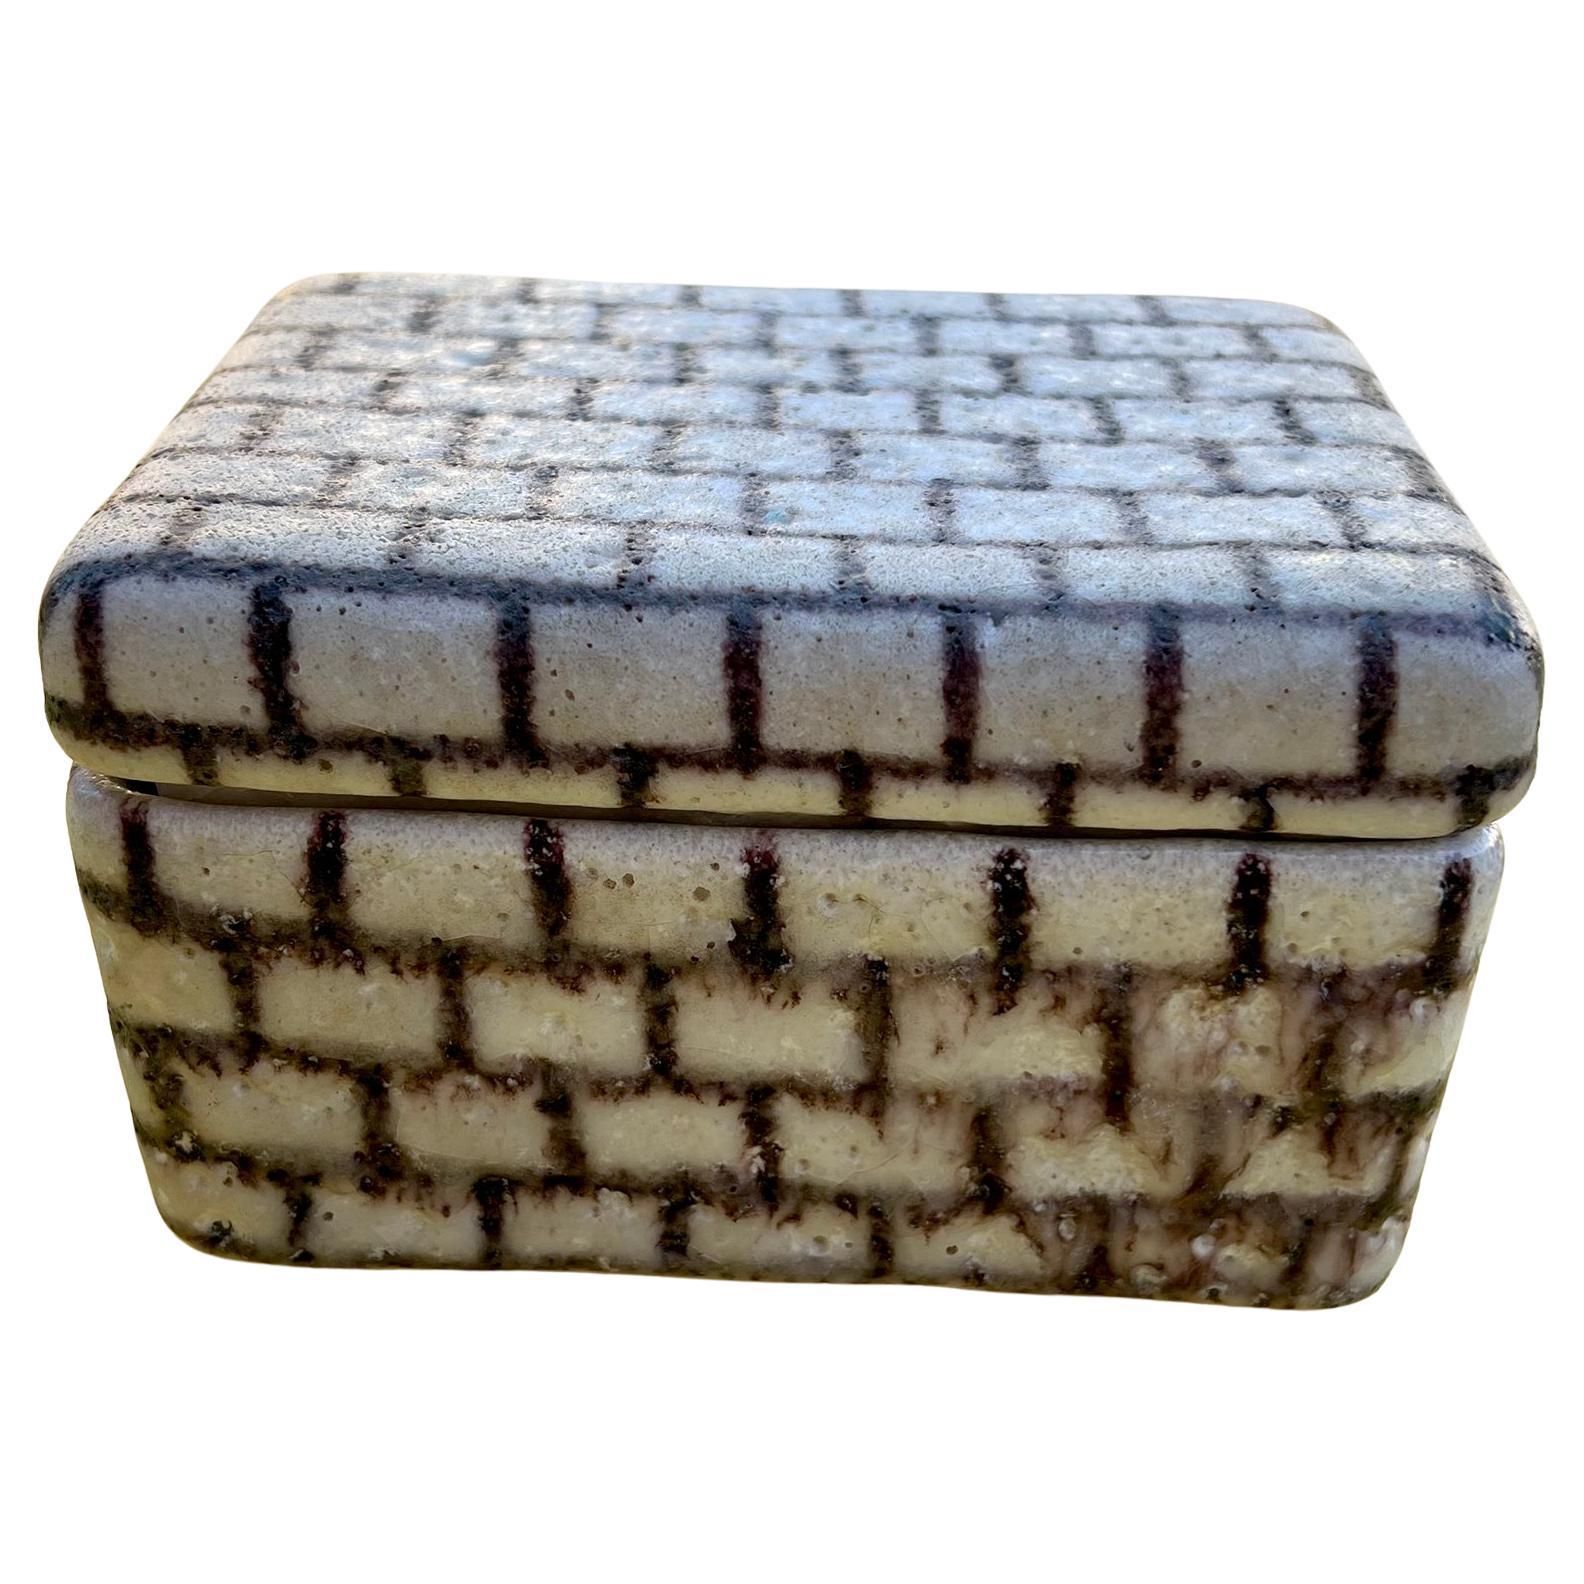 Boîte à couvercle en céramique à l'émail mousseux avec un motif de grille créé par Guido Gambone, vers les années 1950.  La boîte mesure 3,5